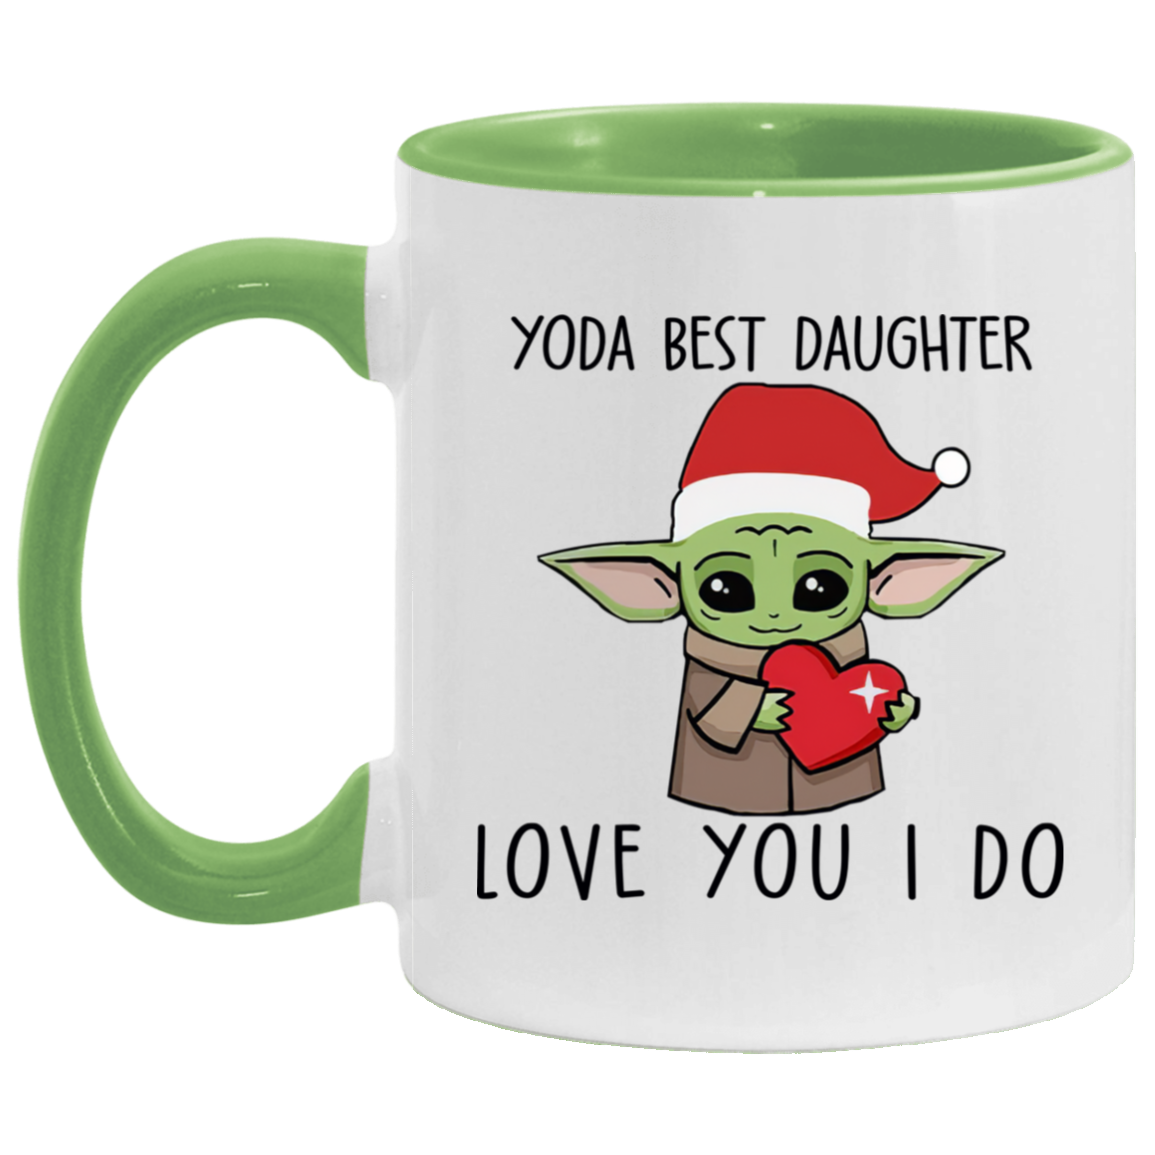 Baby Yoda Santa Christmas 2020  Coffee Mug 